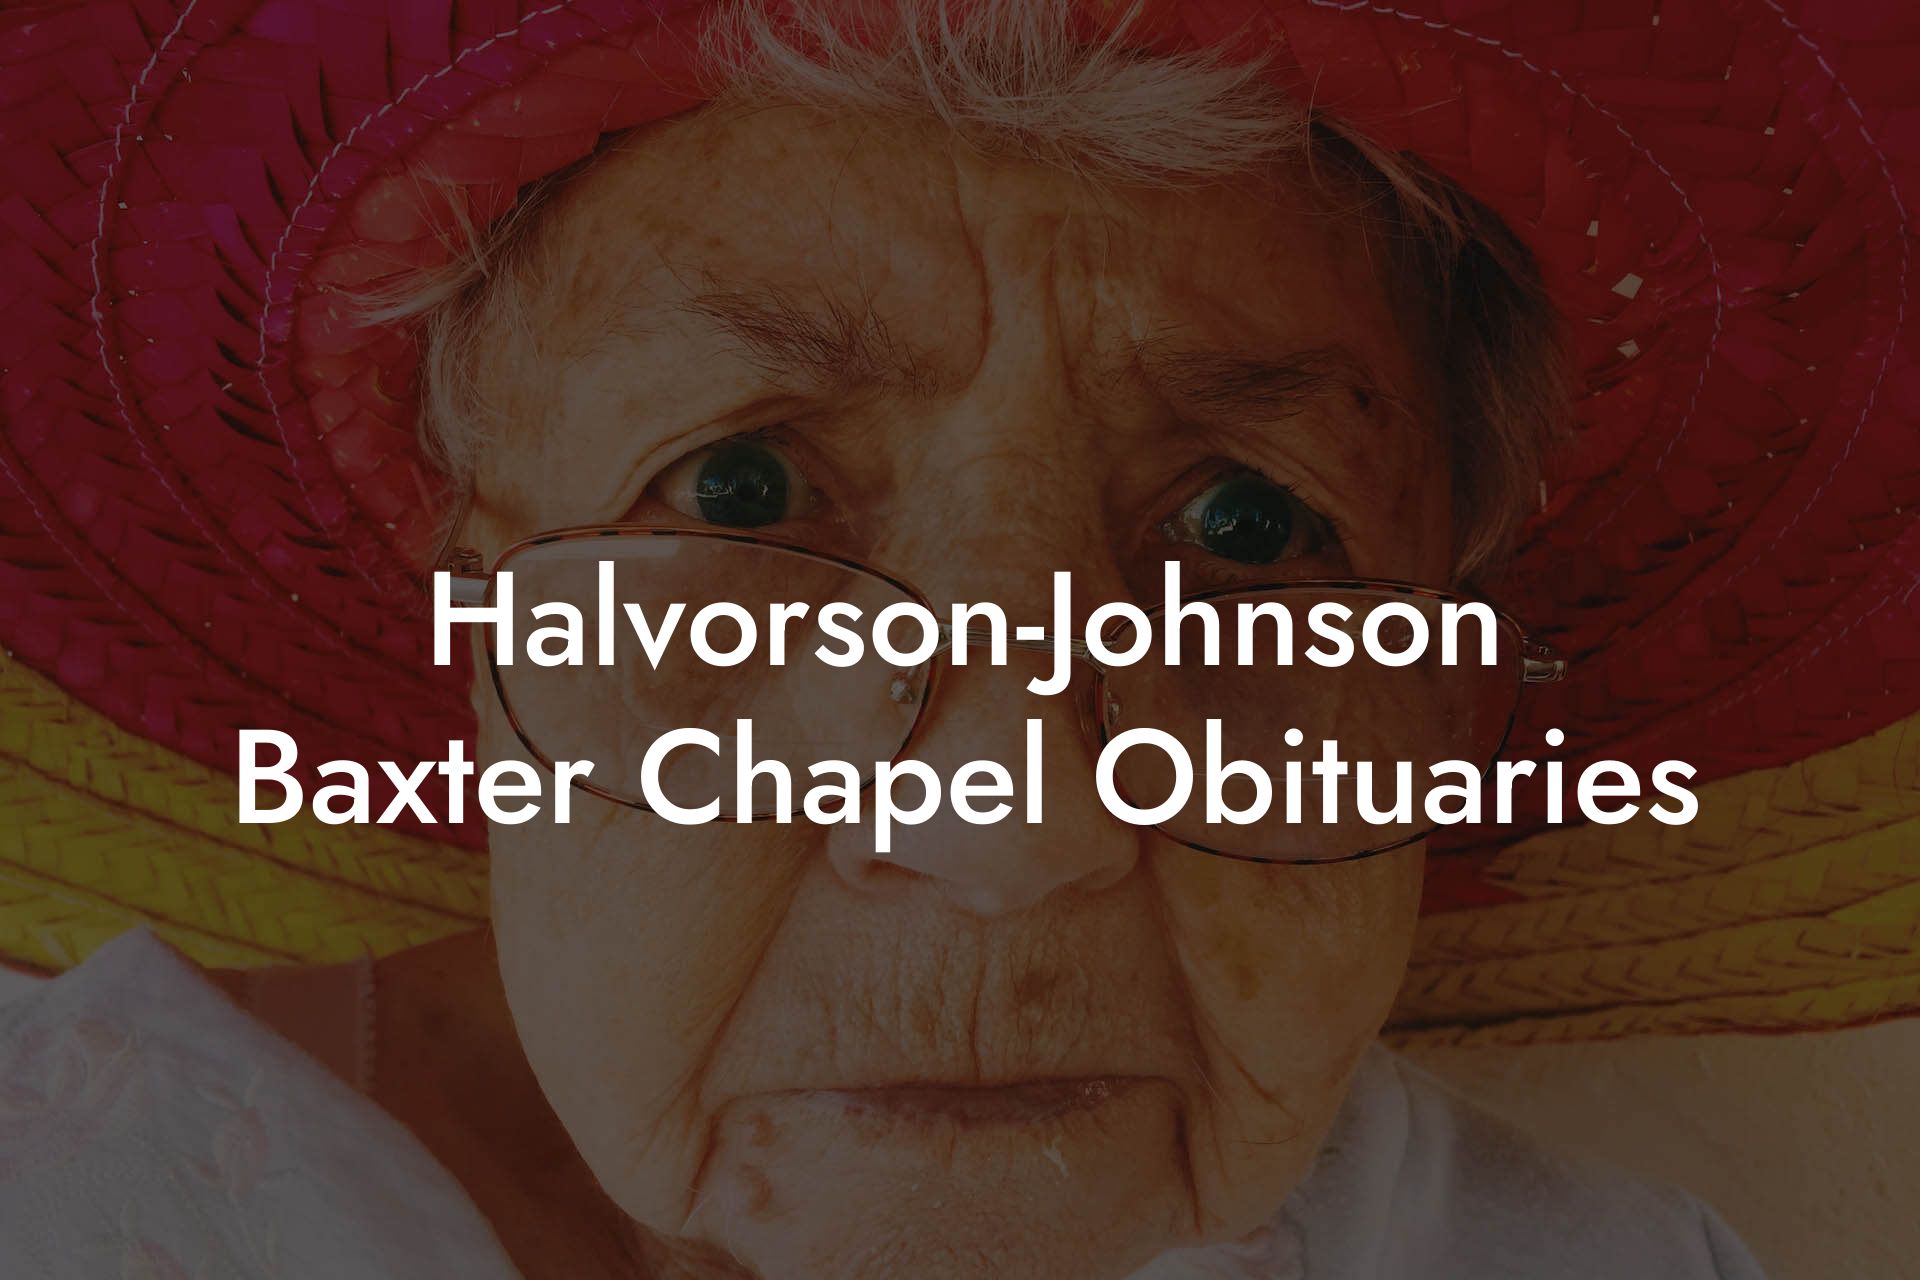 Halvorson-Johnson Baxter Chapel Obituaries